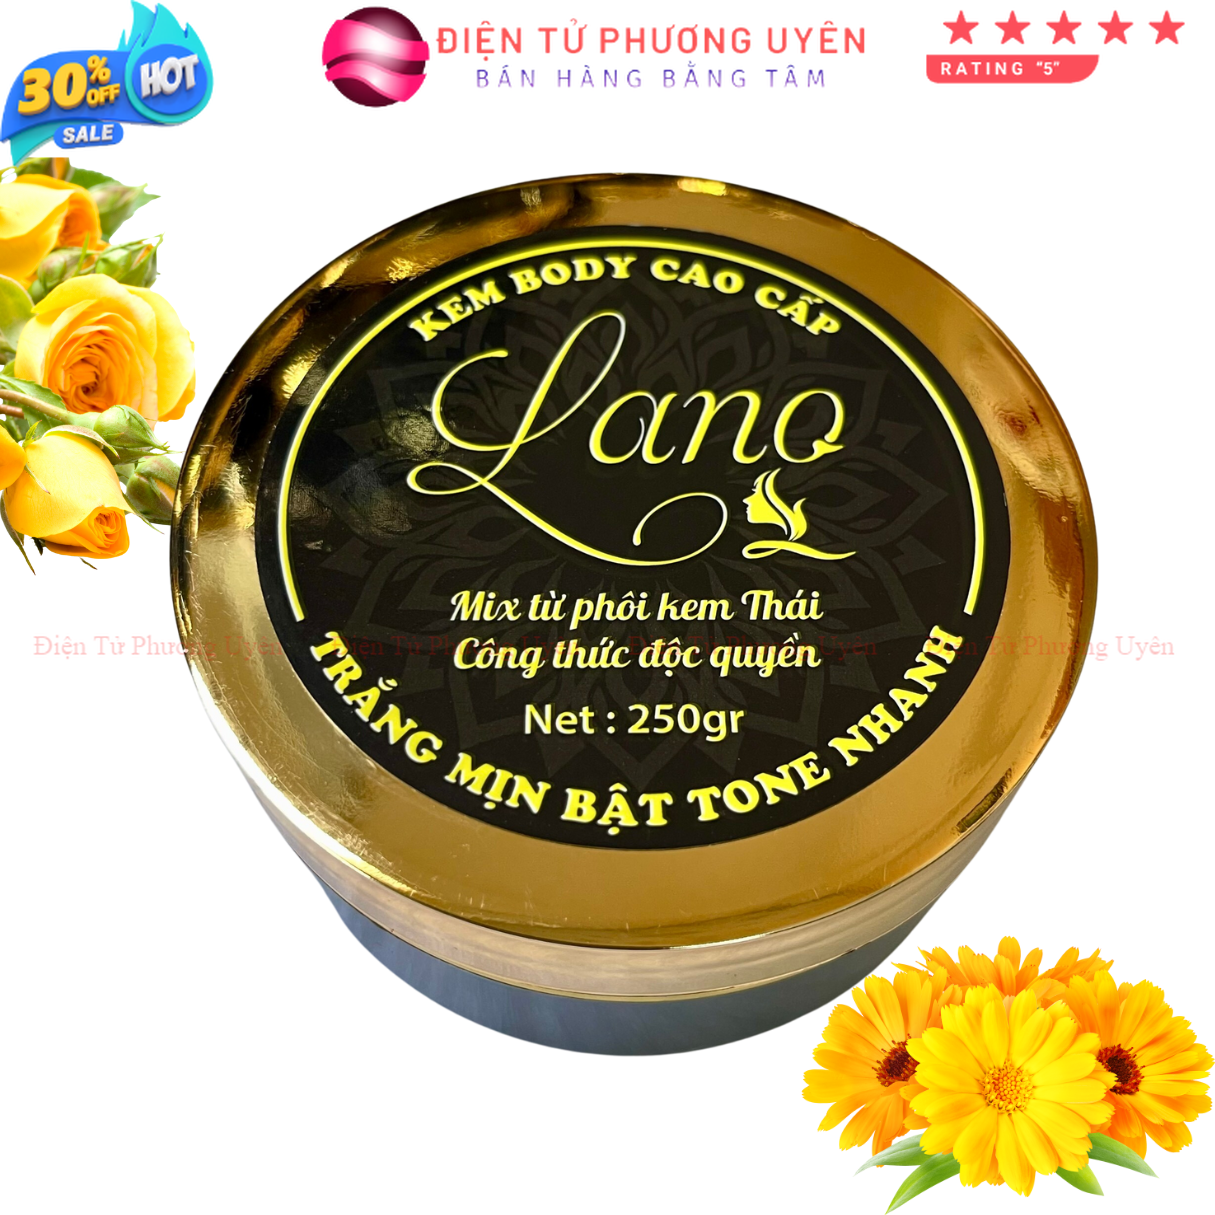 Kem Body miss Thái Lan LANO, dưỡng trắng, bật tone sau 1 tuần sử dụng, hũ 250gram - Phương Uyên